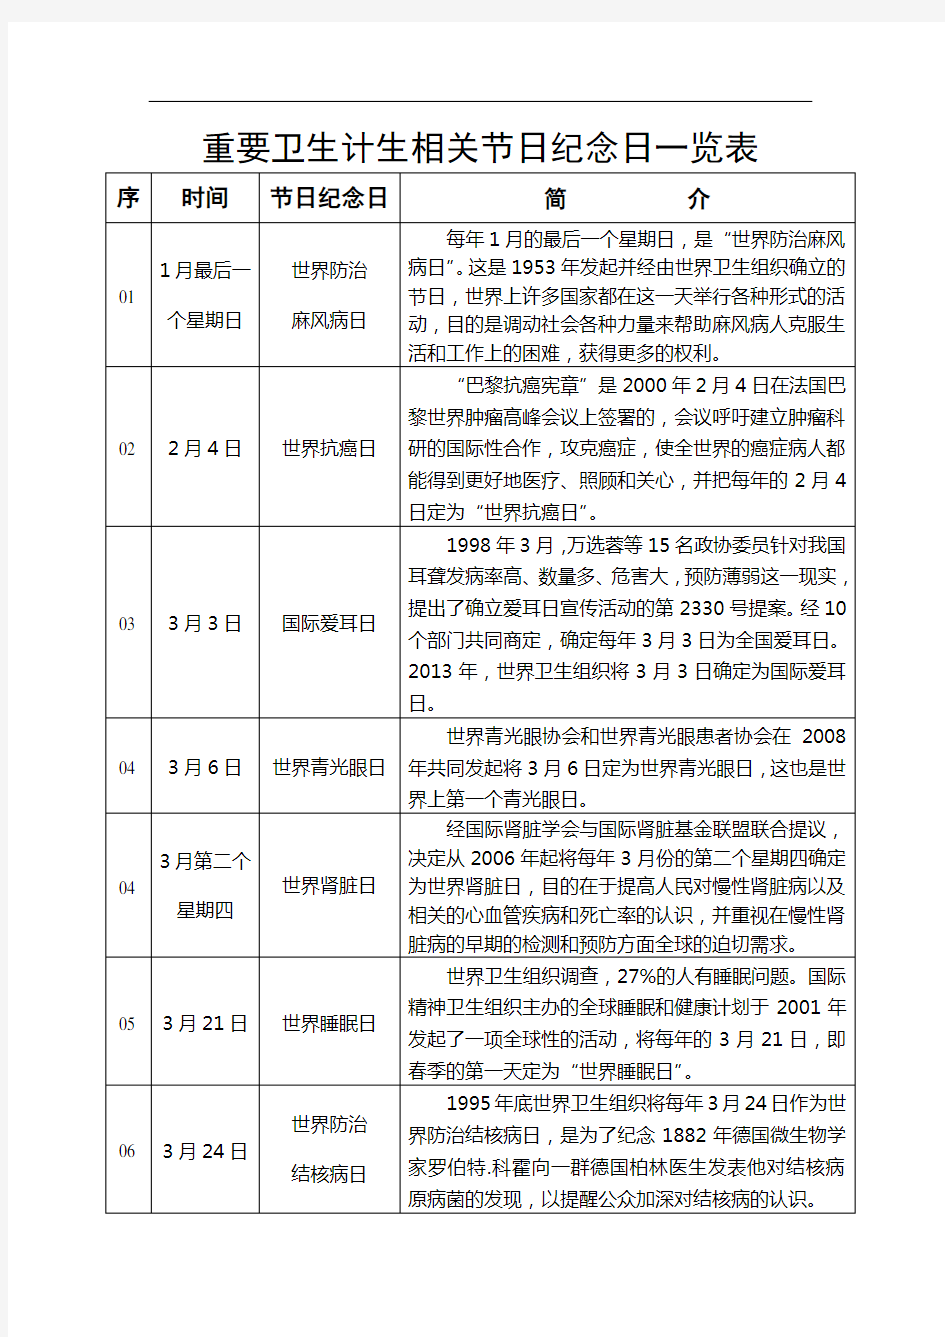 重要卫生计生相关节日纪念日一览表(2015-03-03 10.00.12)